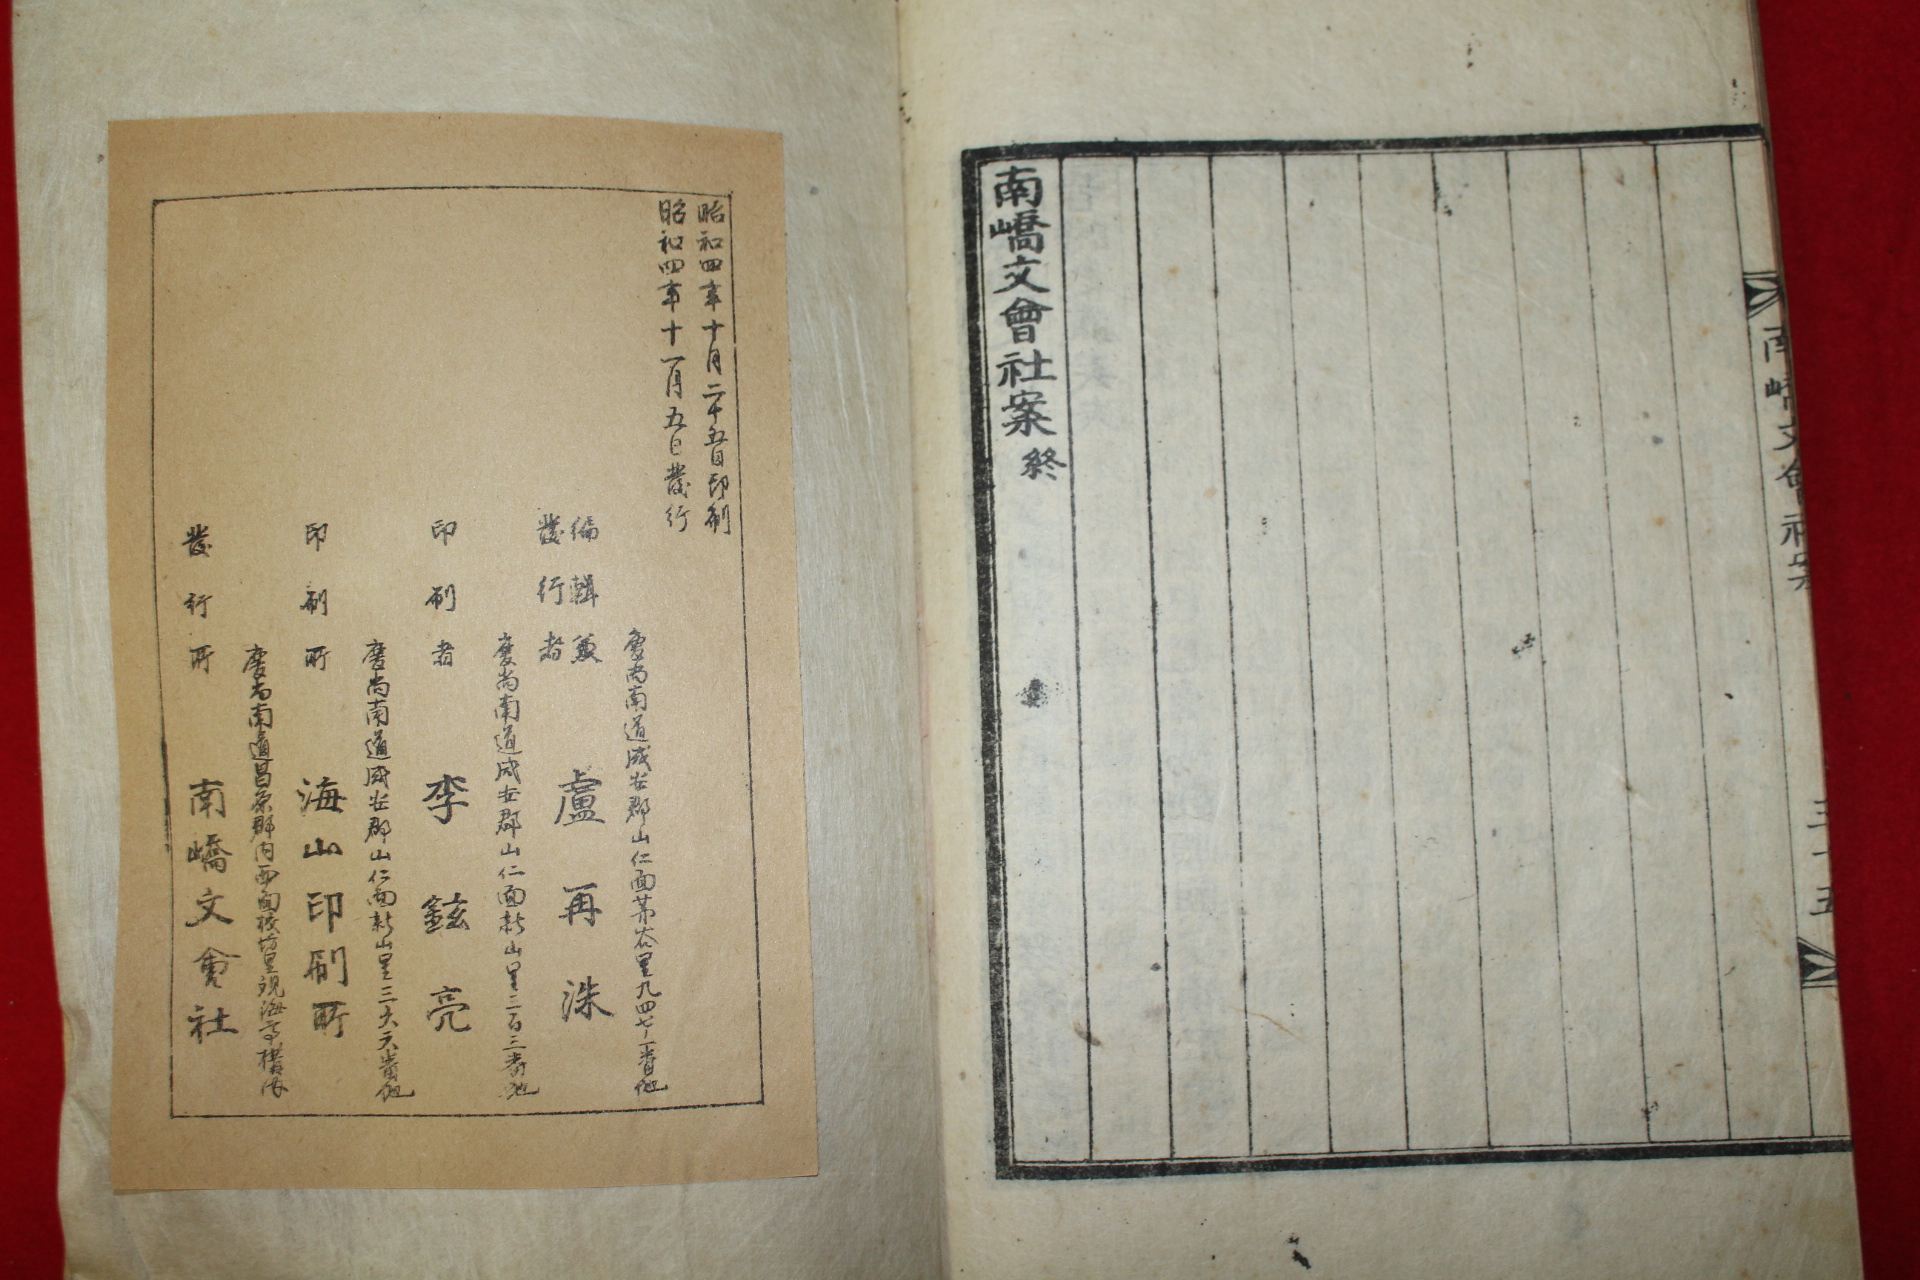 1929년 노재수(盧再洙)편 남교문회사안(南嶠文會社案) 1책완질